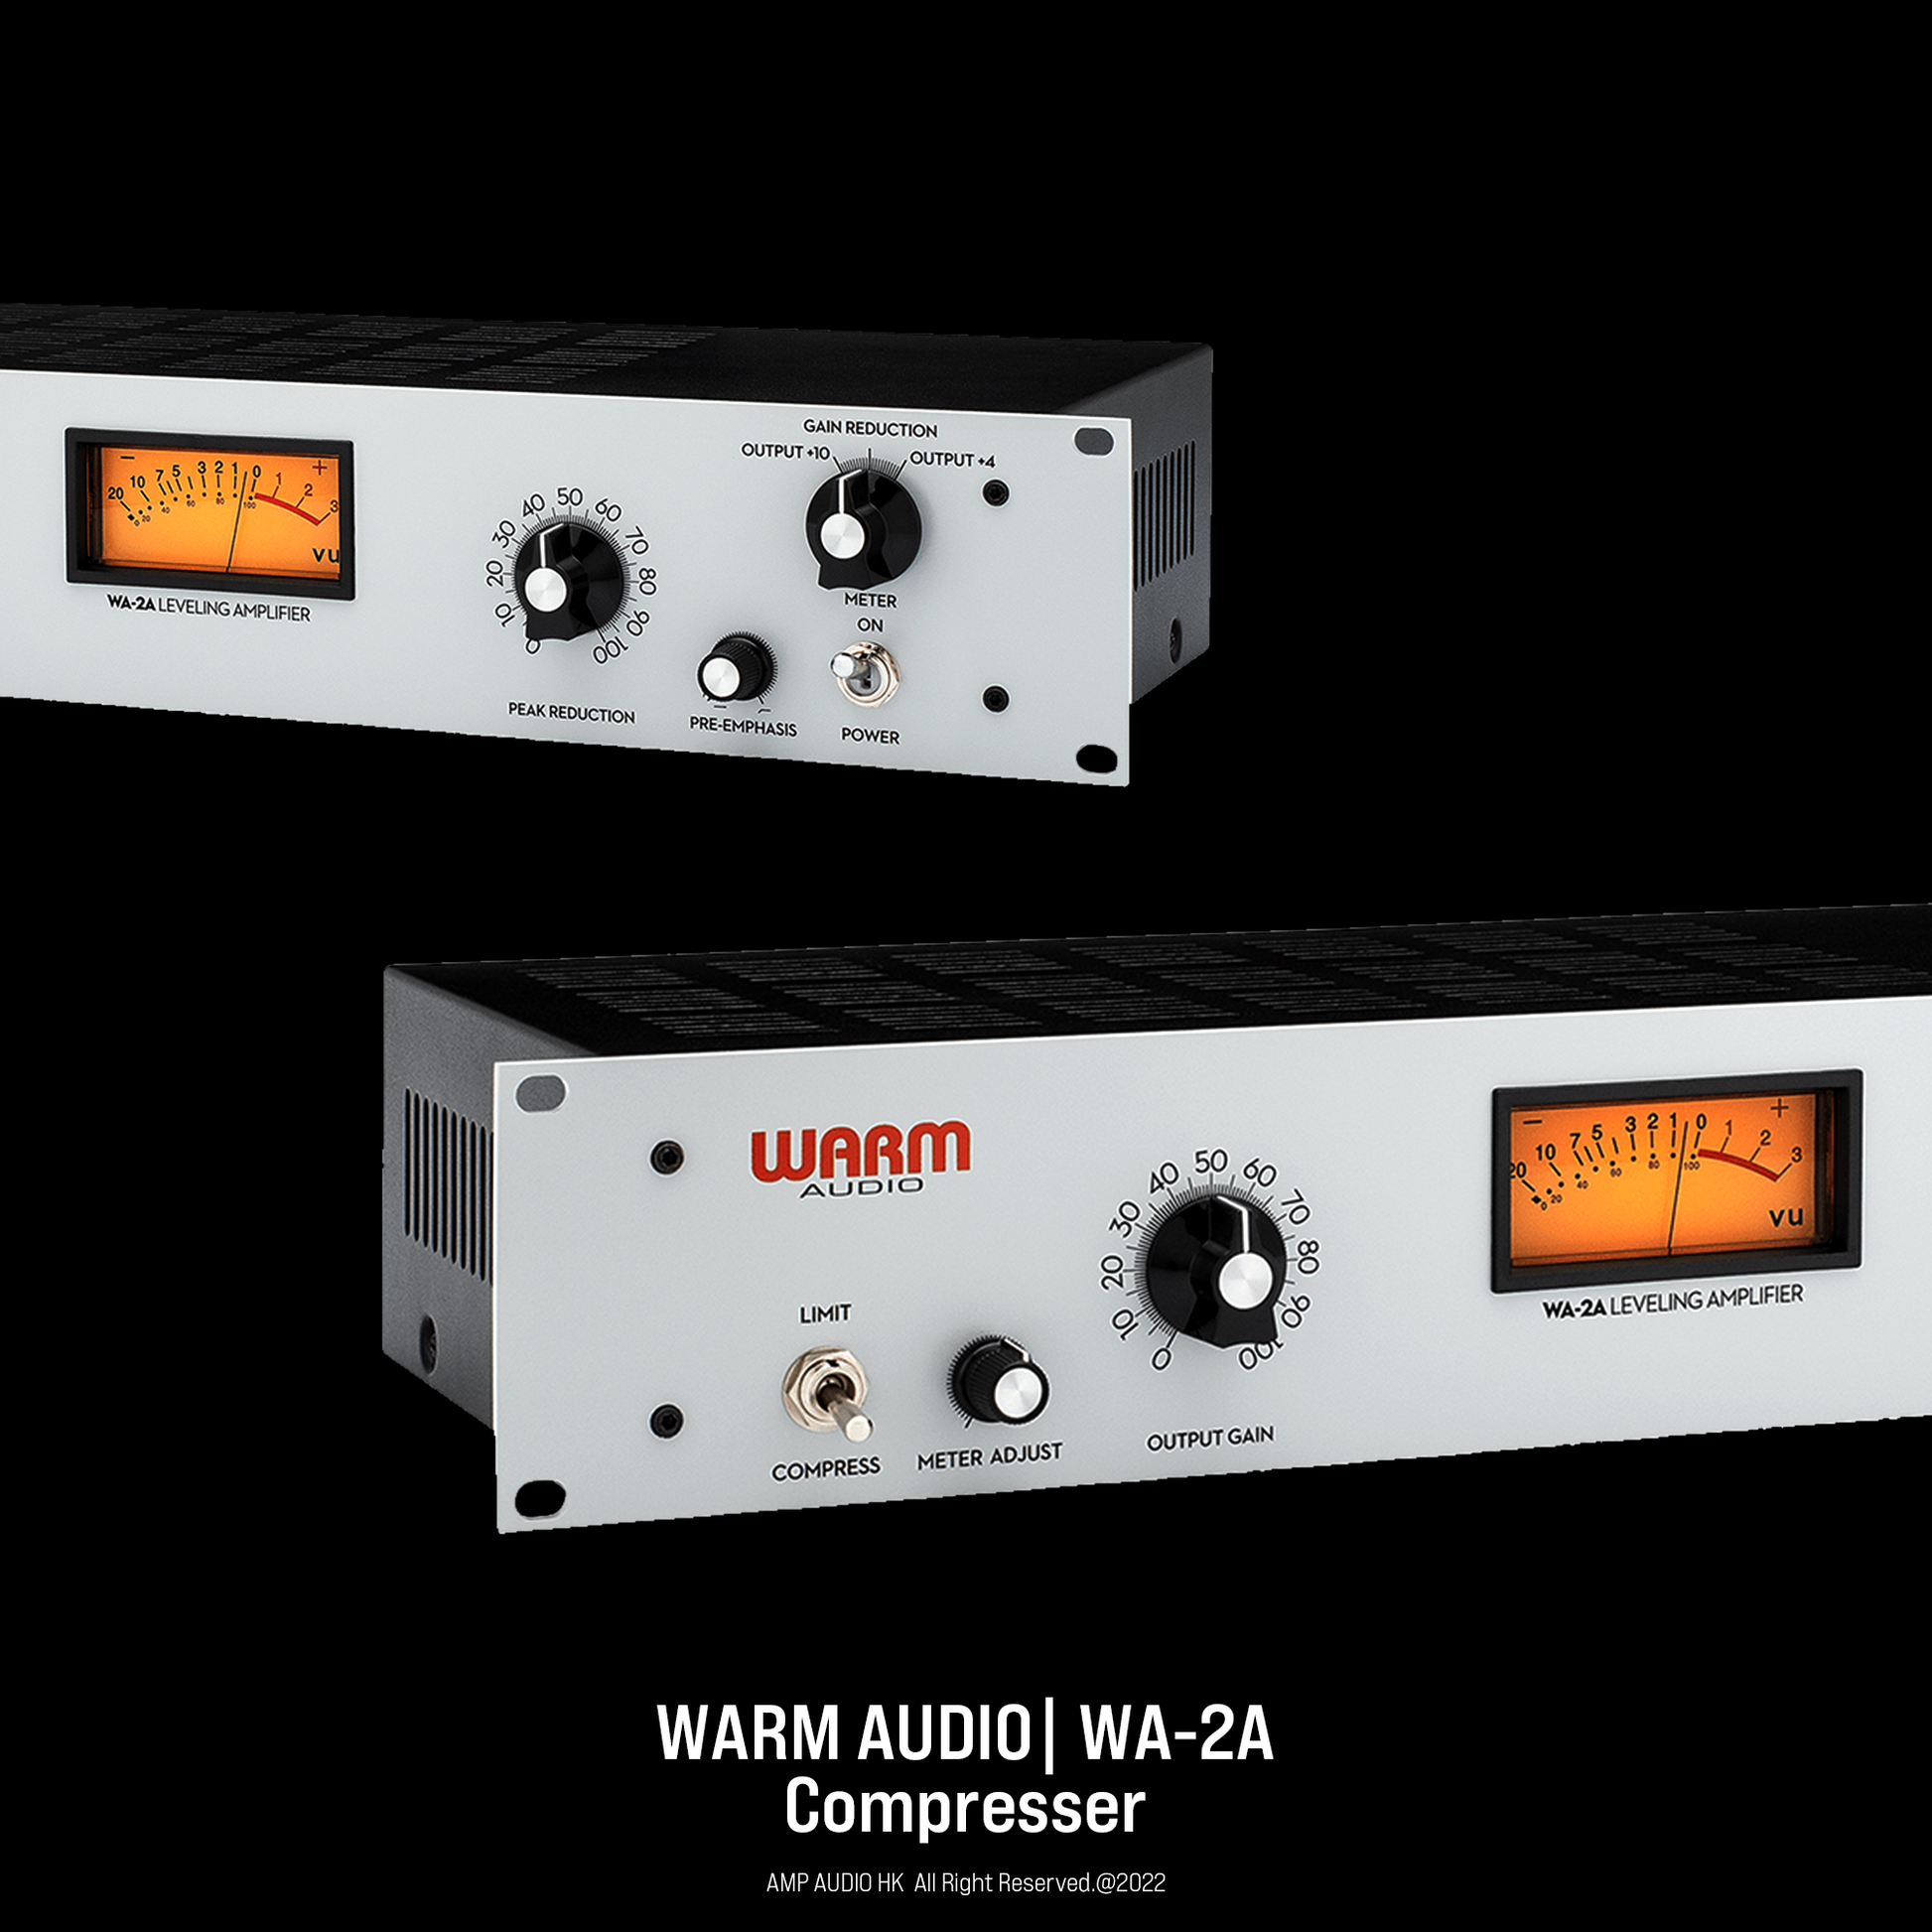 Warm Audio | WA-2A - AMP AUDIO